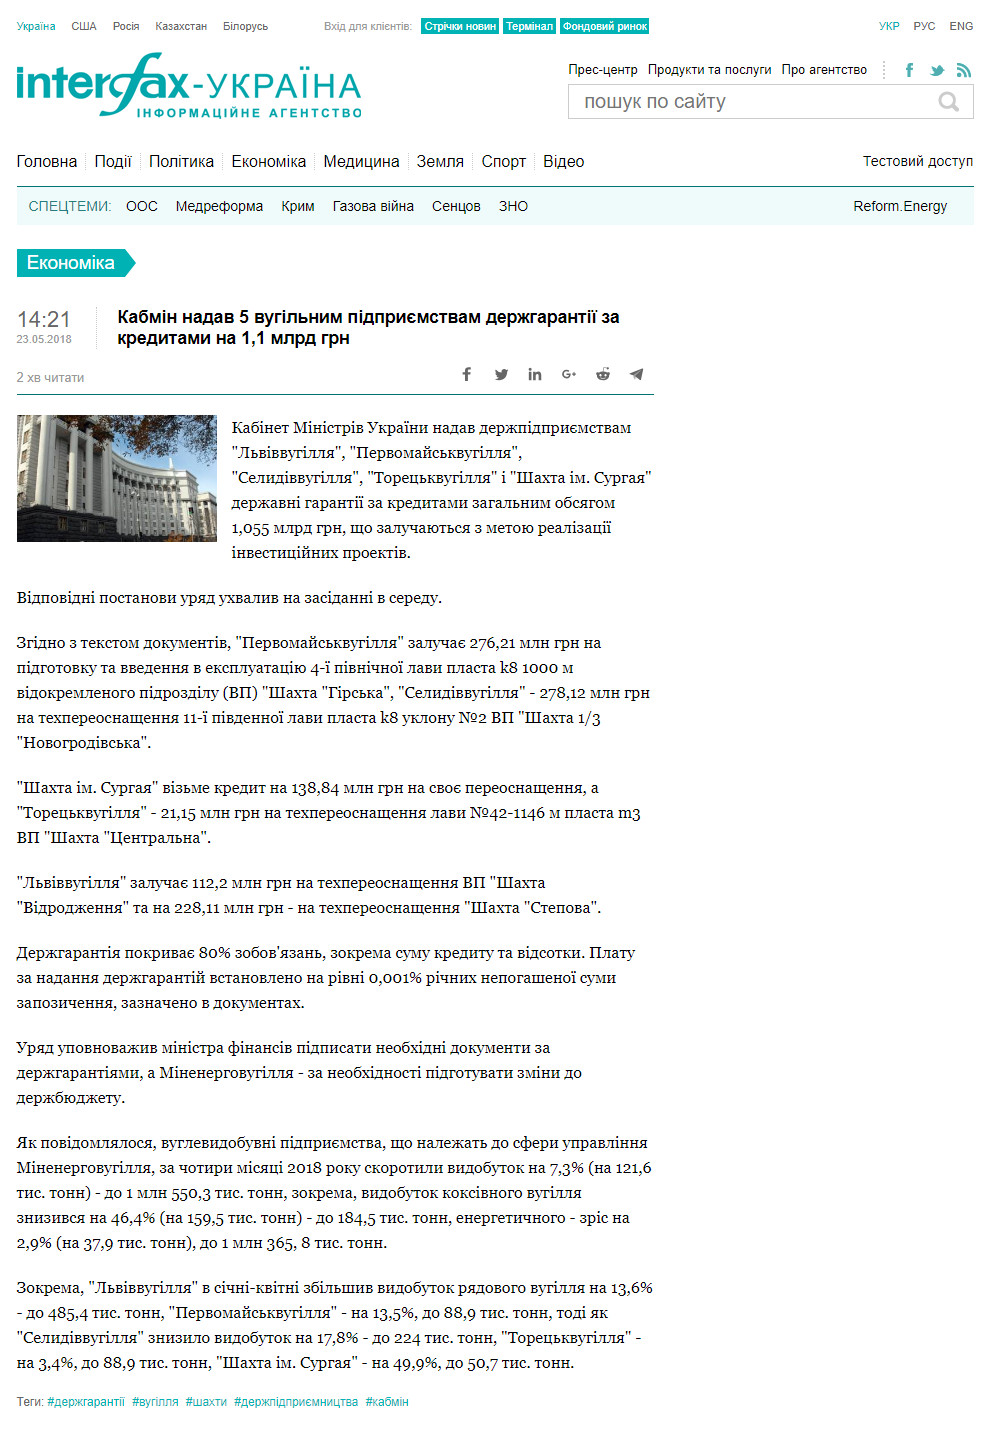 https://ua.interfax.com.ua/news/economic/507209.html